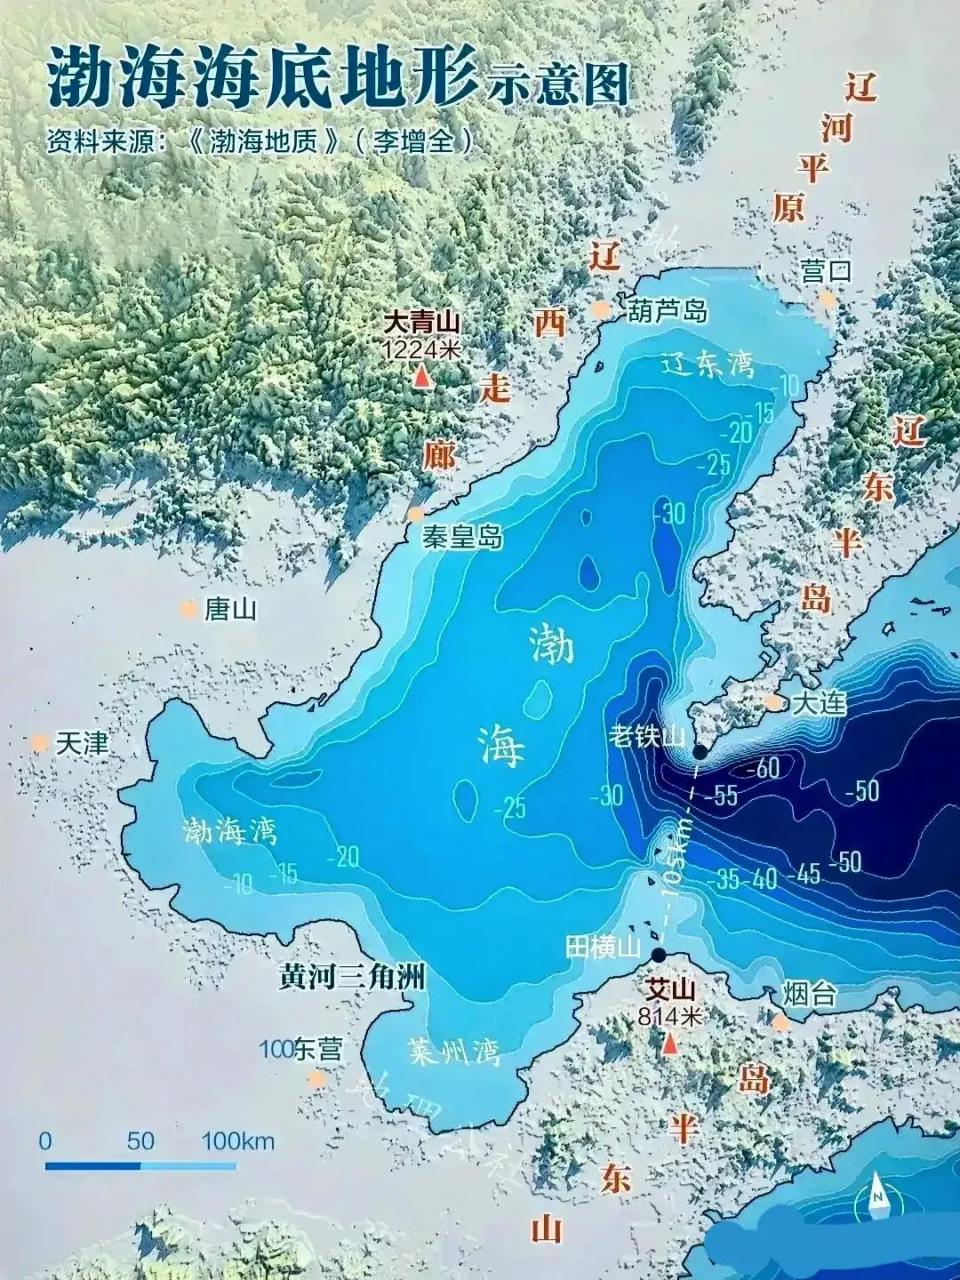 看到渤海湾的等高线海底图,终于知道渤海湾大桥为什么到现在还没有